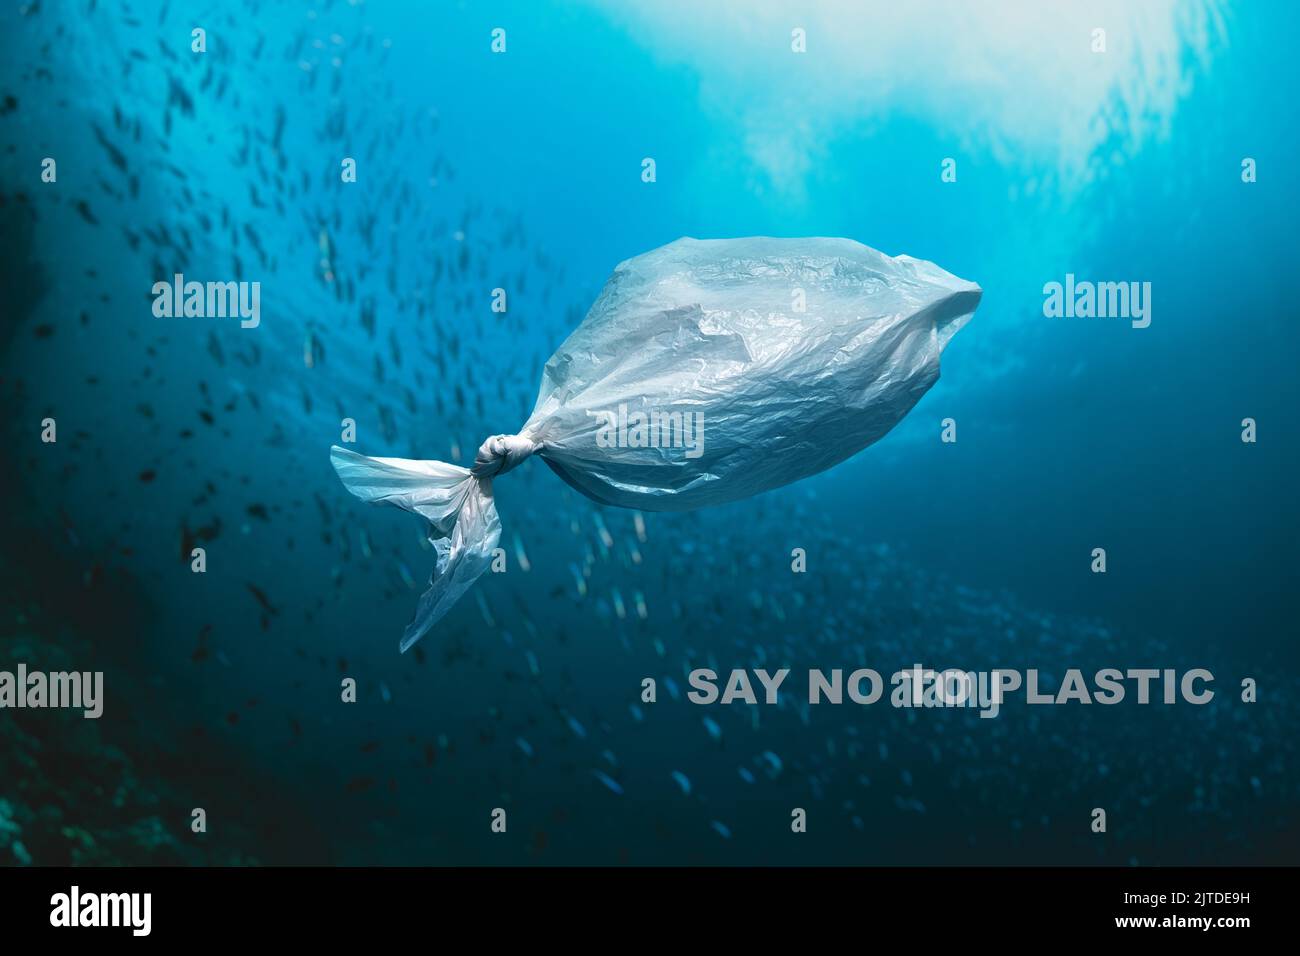 Plastiktüte schwimmt im Meer - SAGEN SIE NEIN ZU PLASTIK Stockfoto